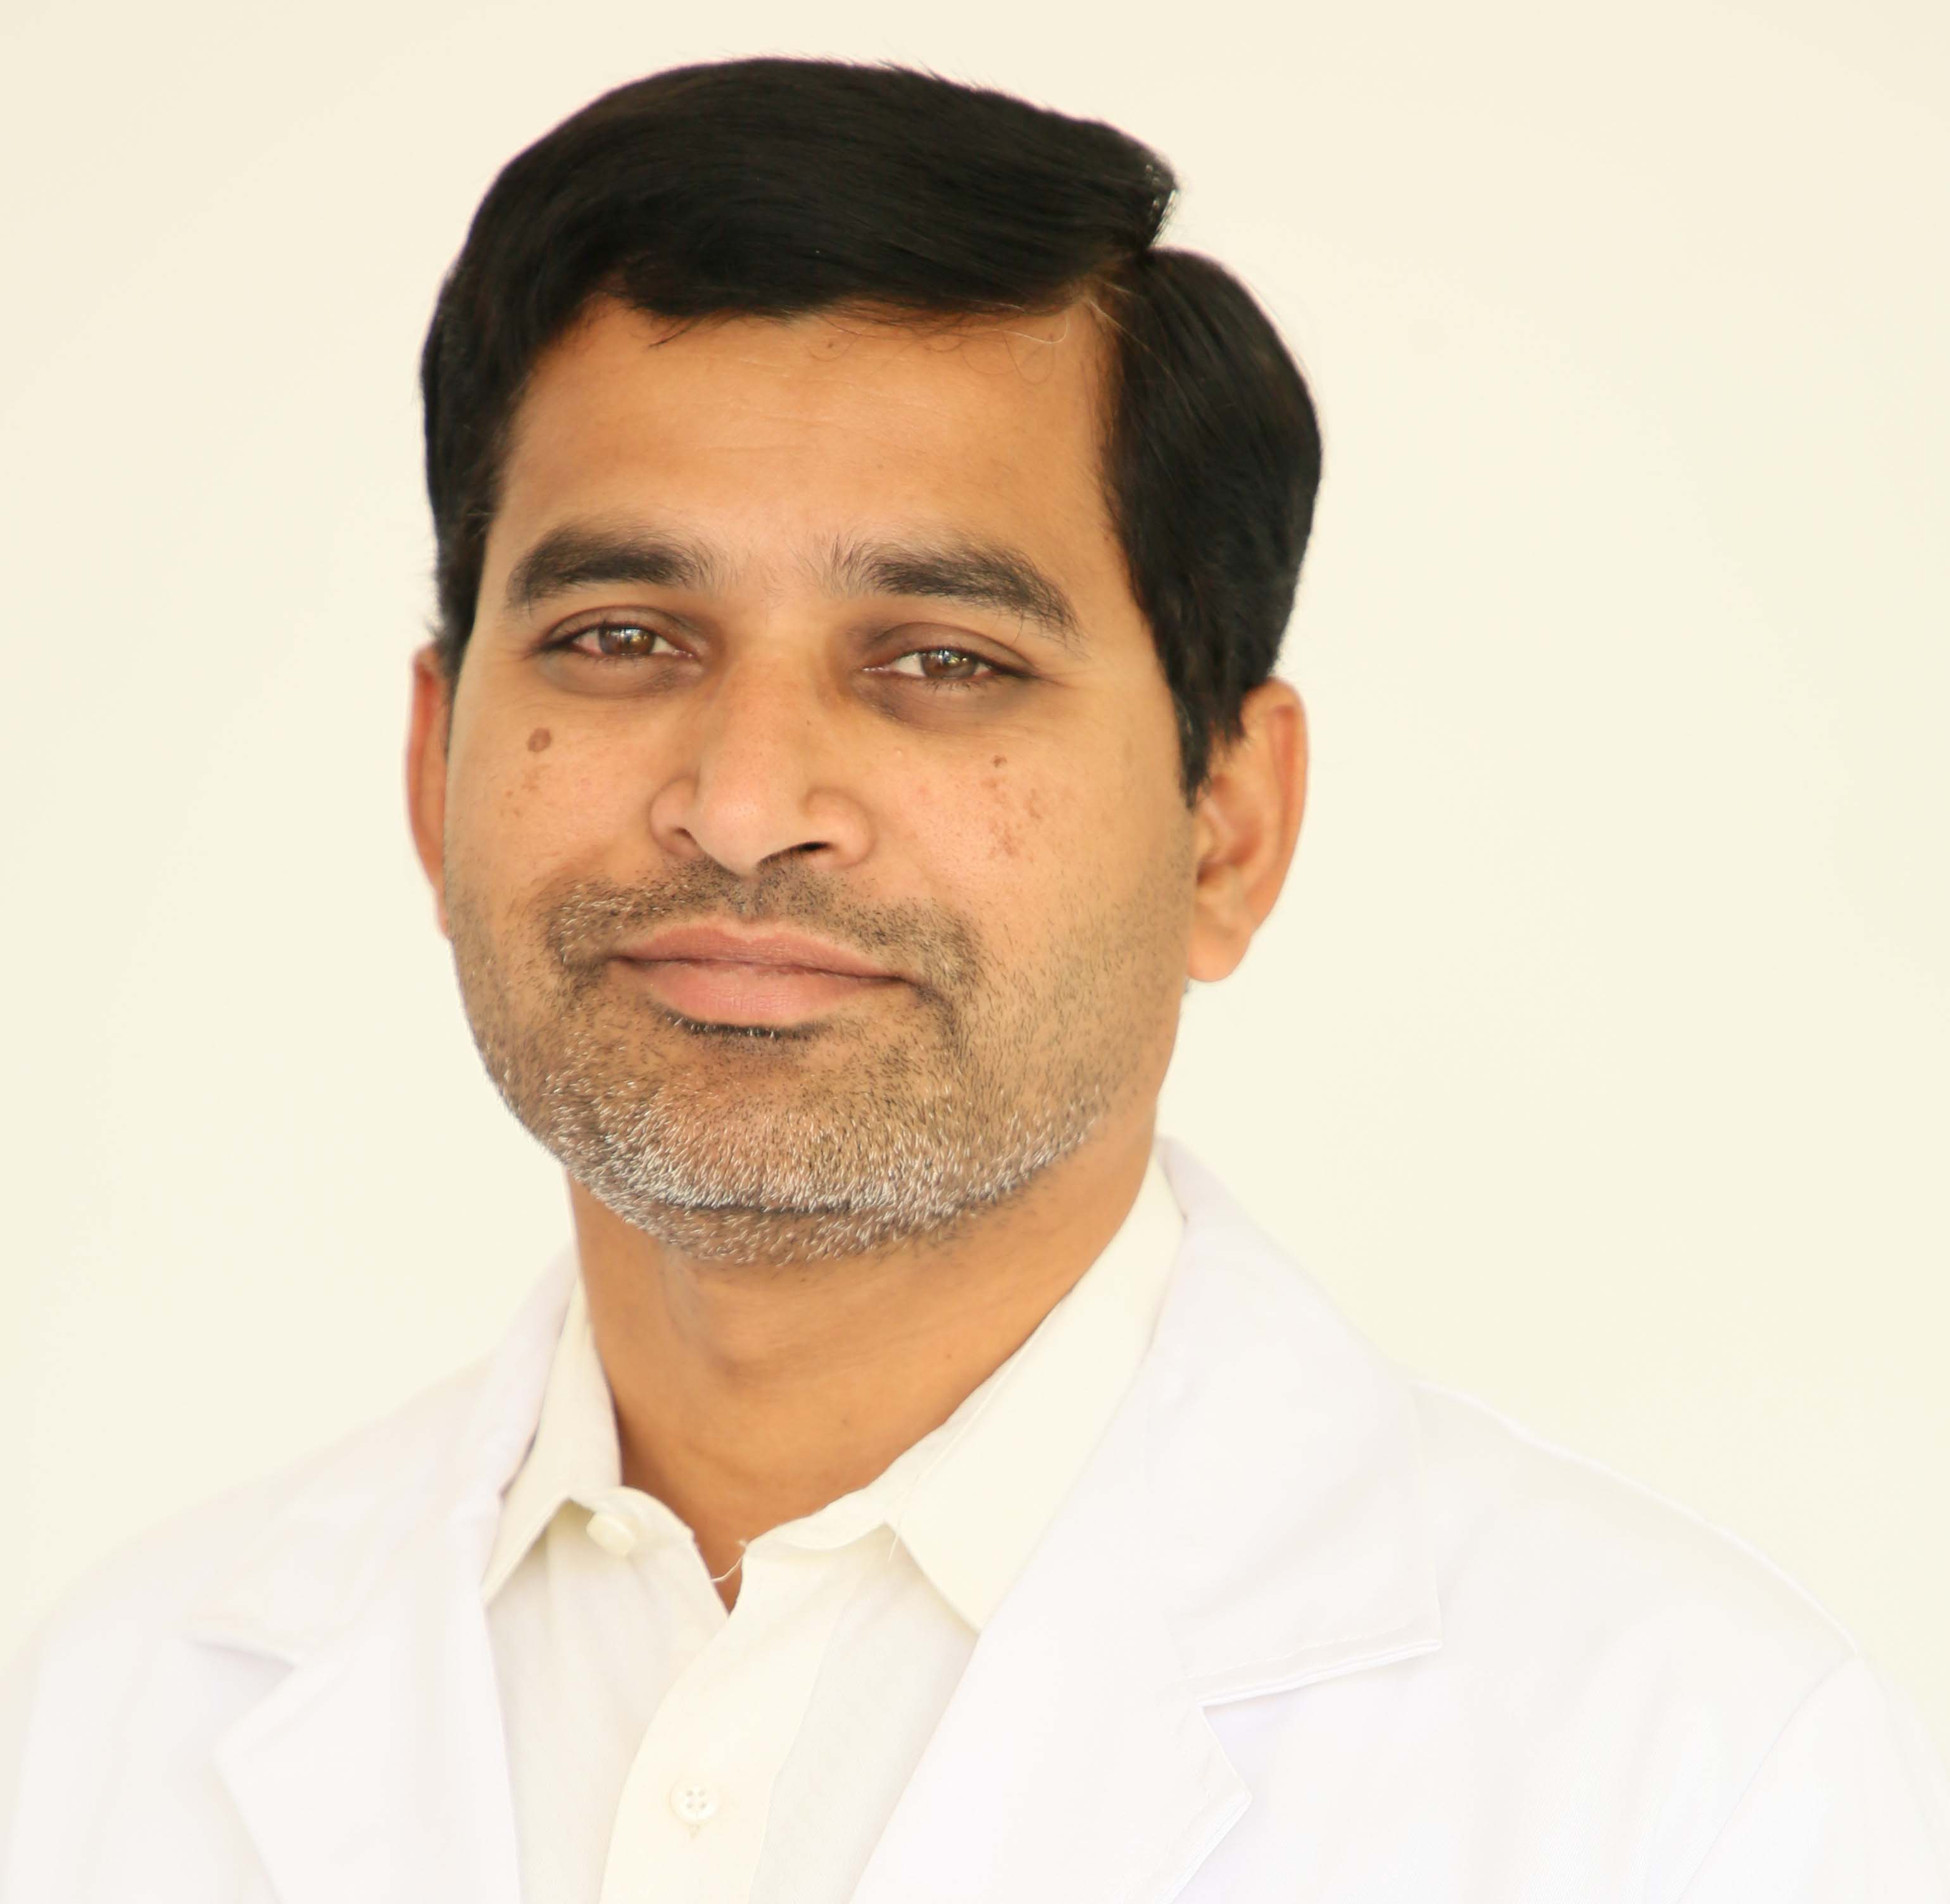 Dr. Vishwanath